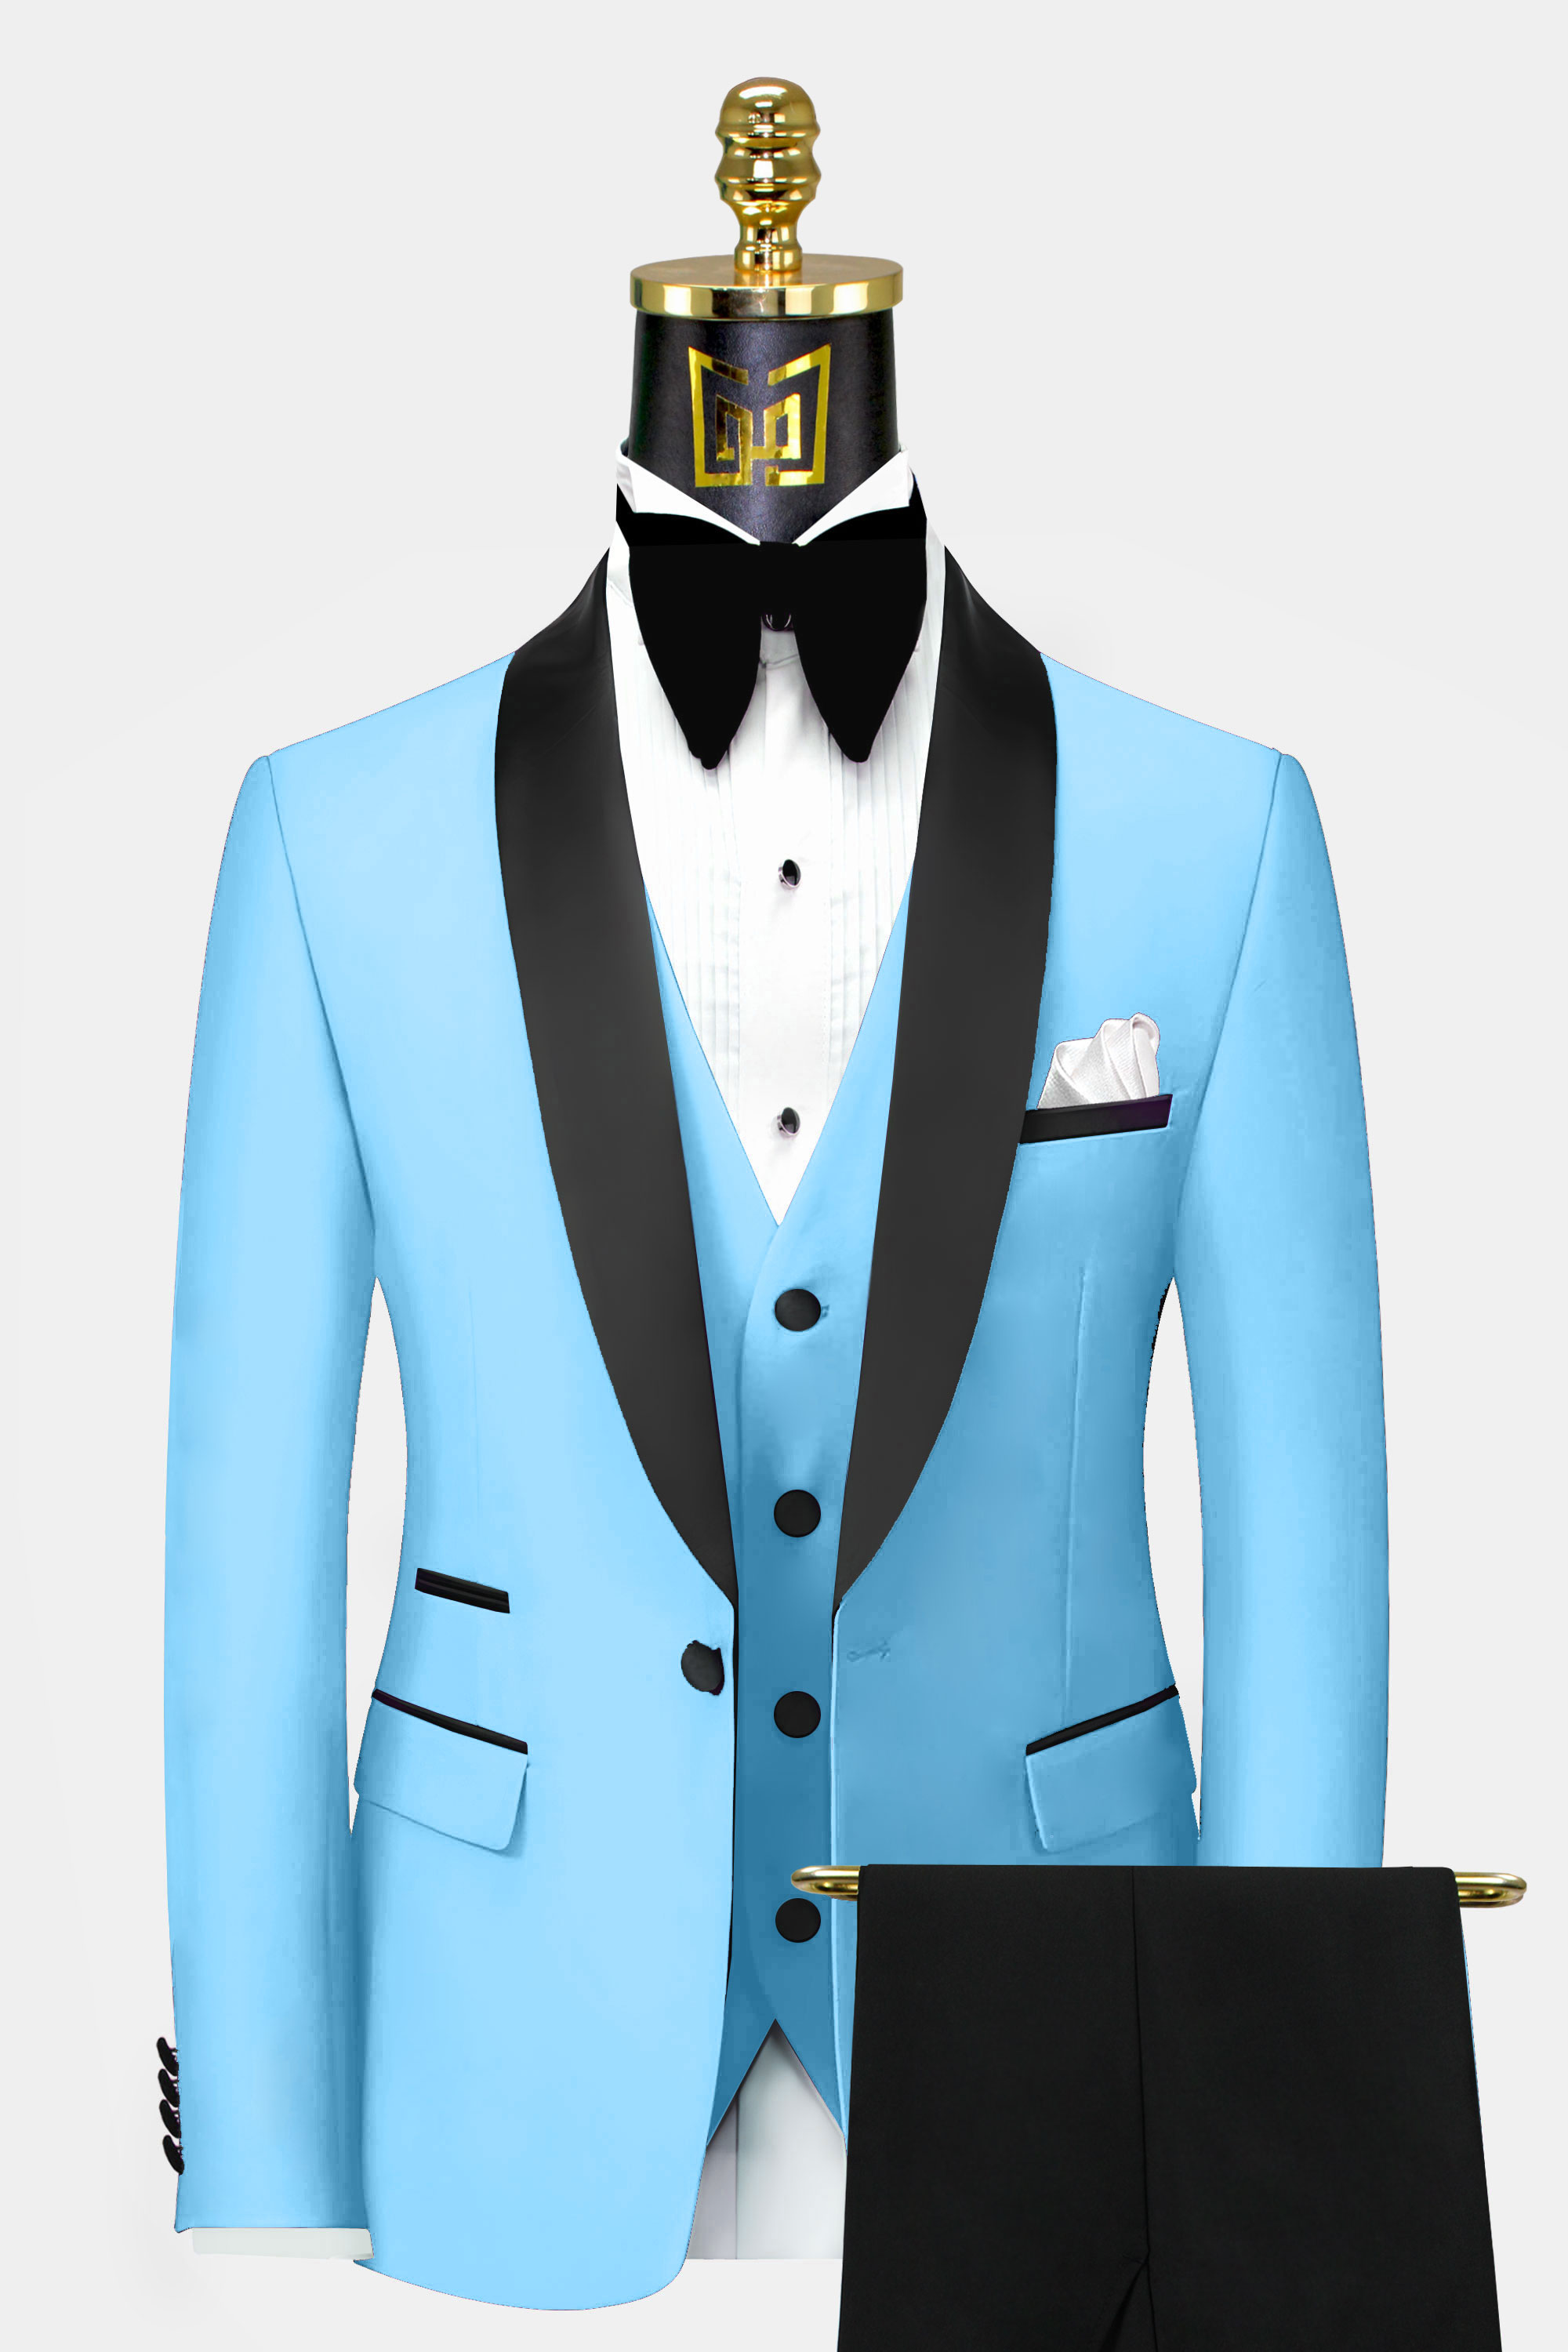 Baby-Blue-Groom-Wedding-Tuxedo-Suit-For-Men-from-Gentlemansguru.com